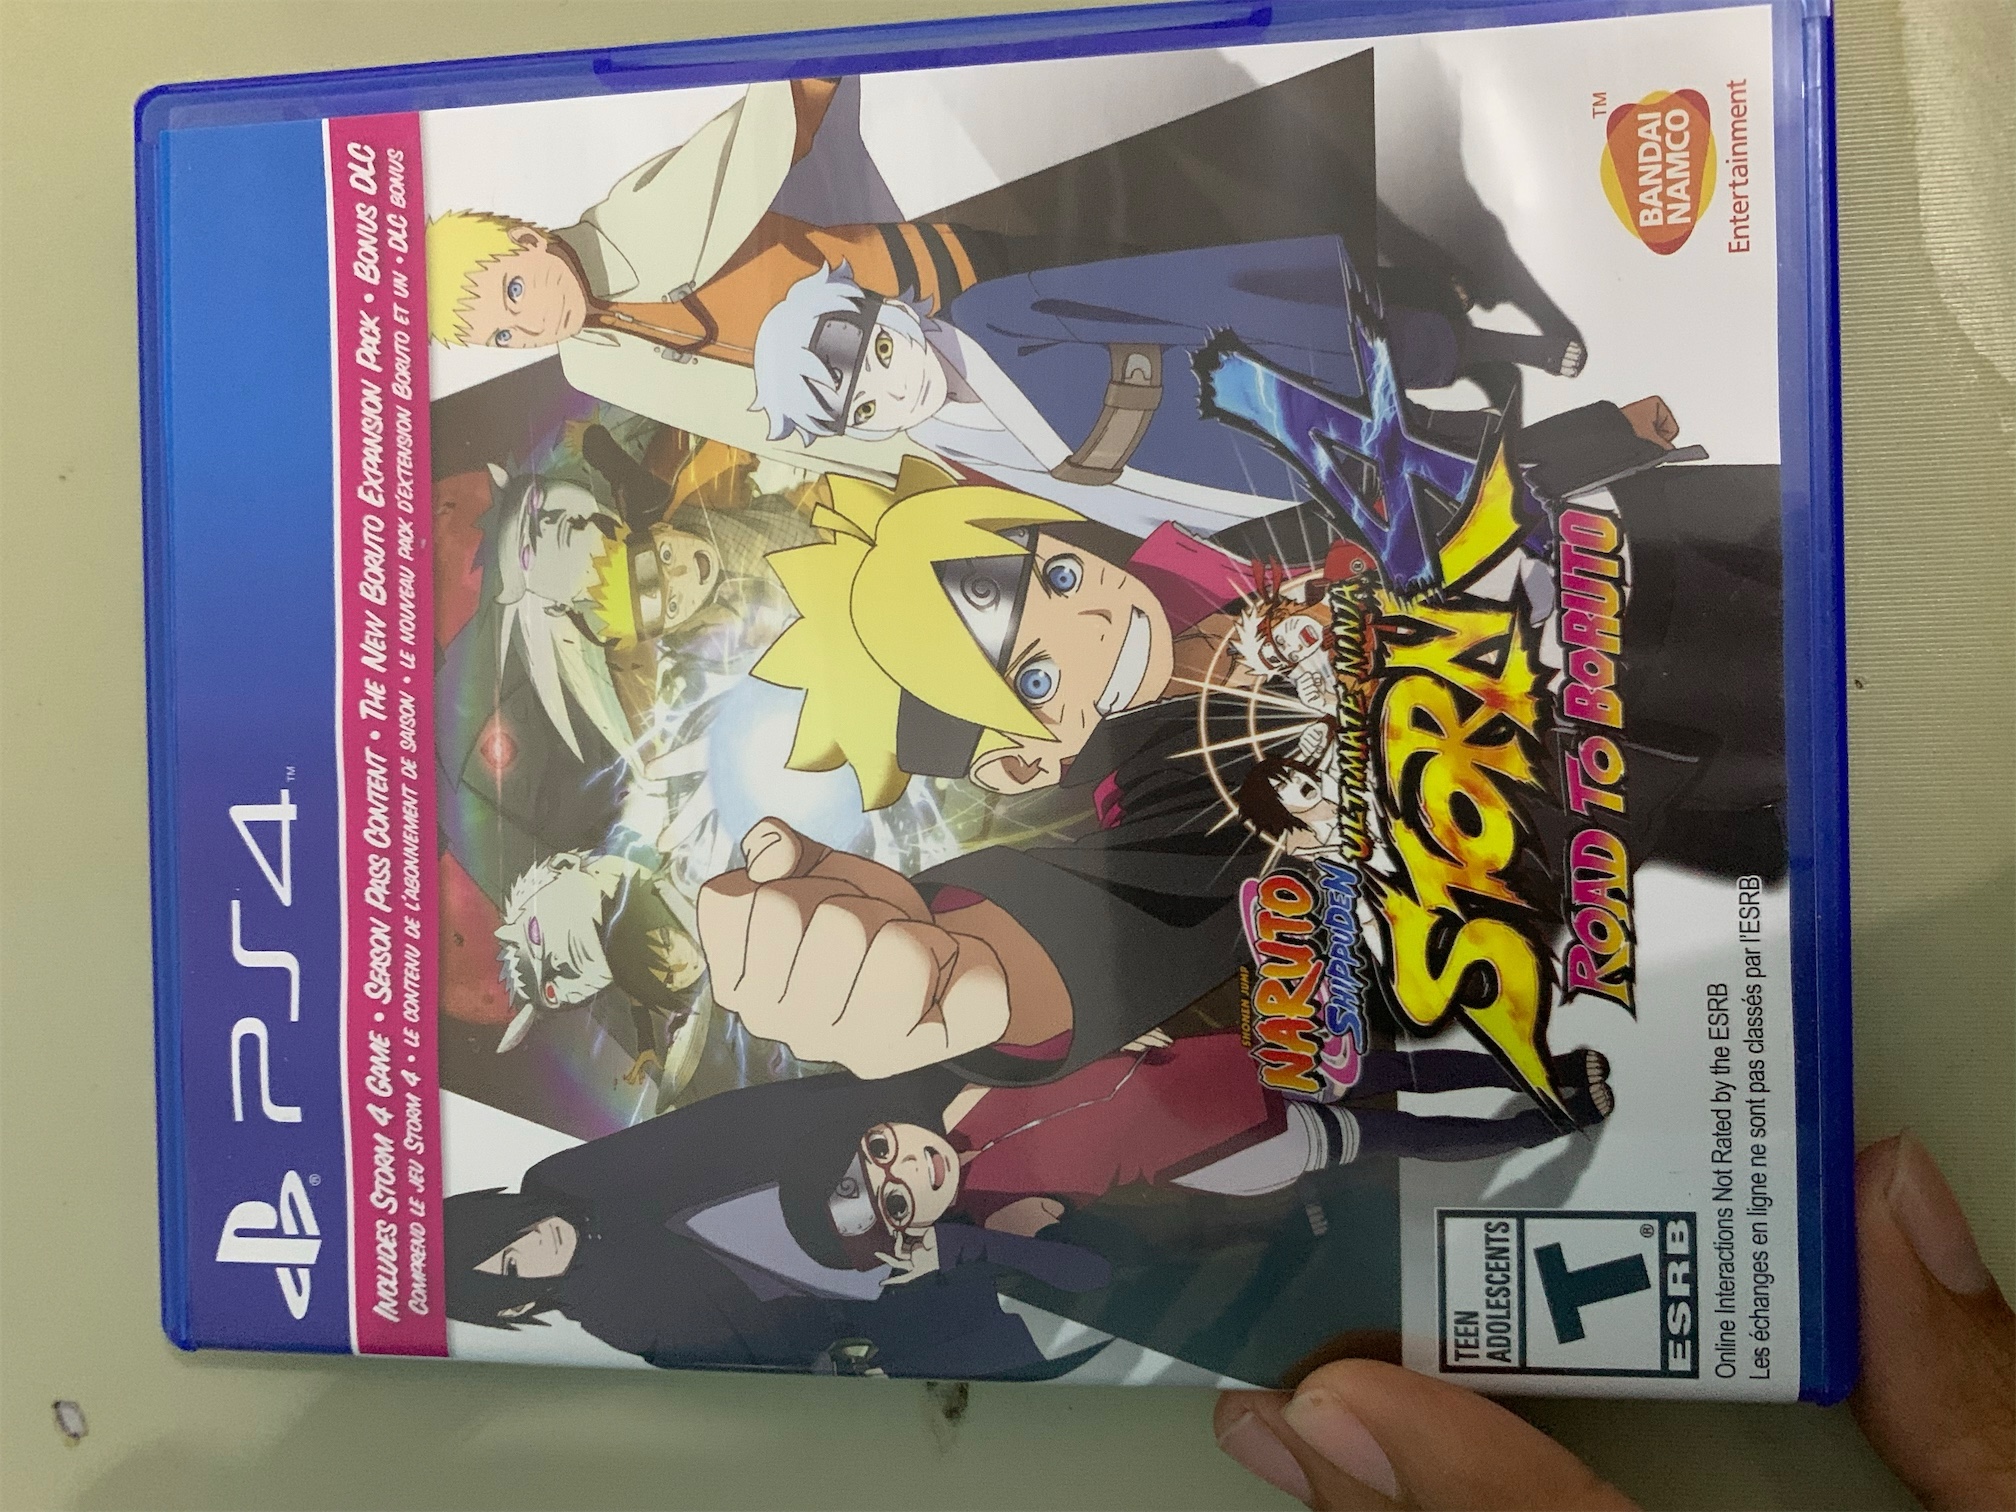 consolas y videojuegos - Naruto storm 4 road boruto para ps4